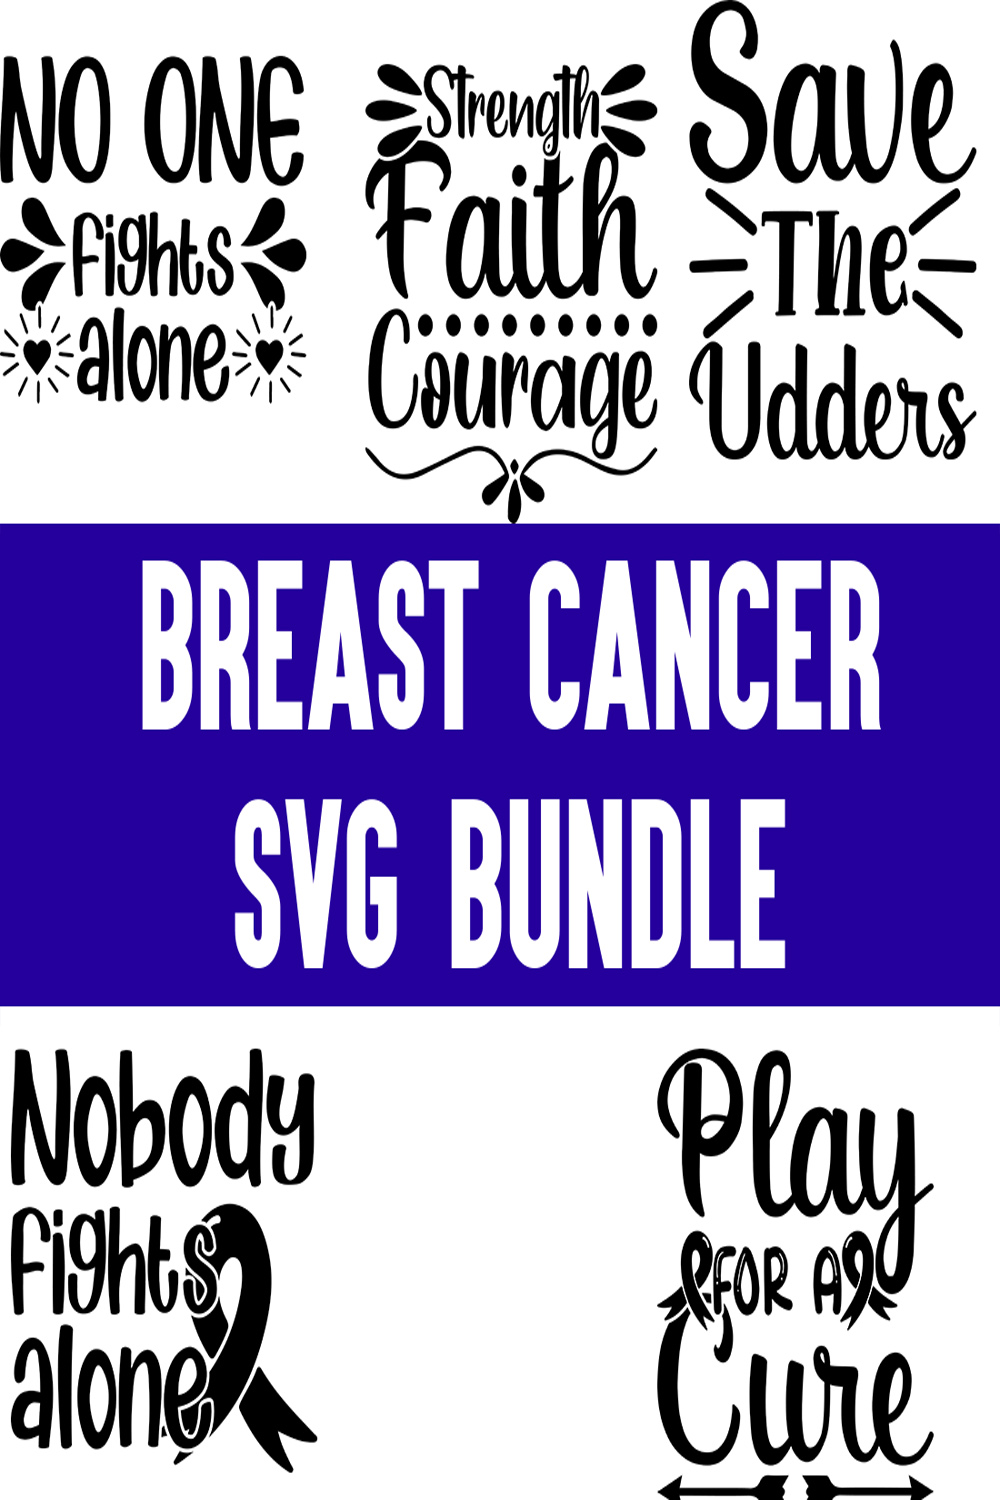 Breast Cancer svg Bundle pinterest preview image.